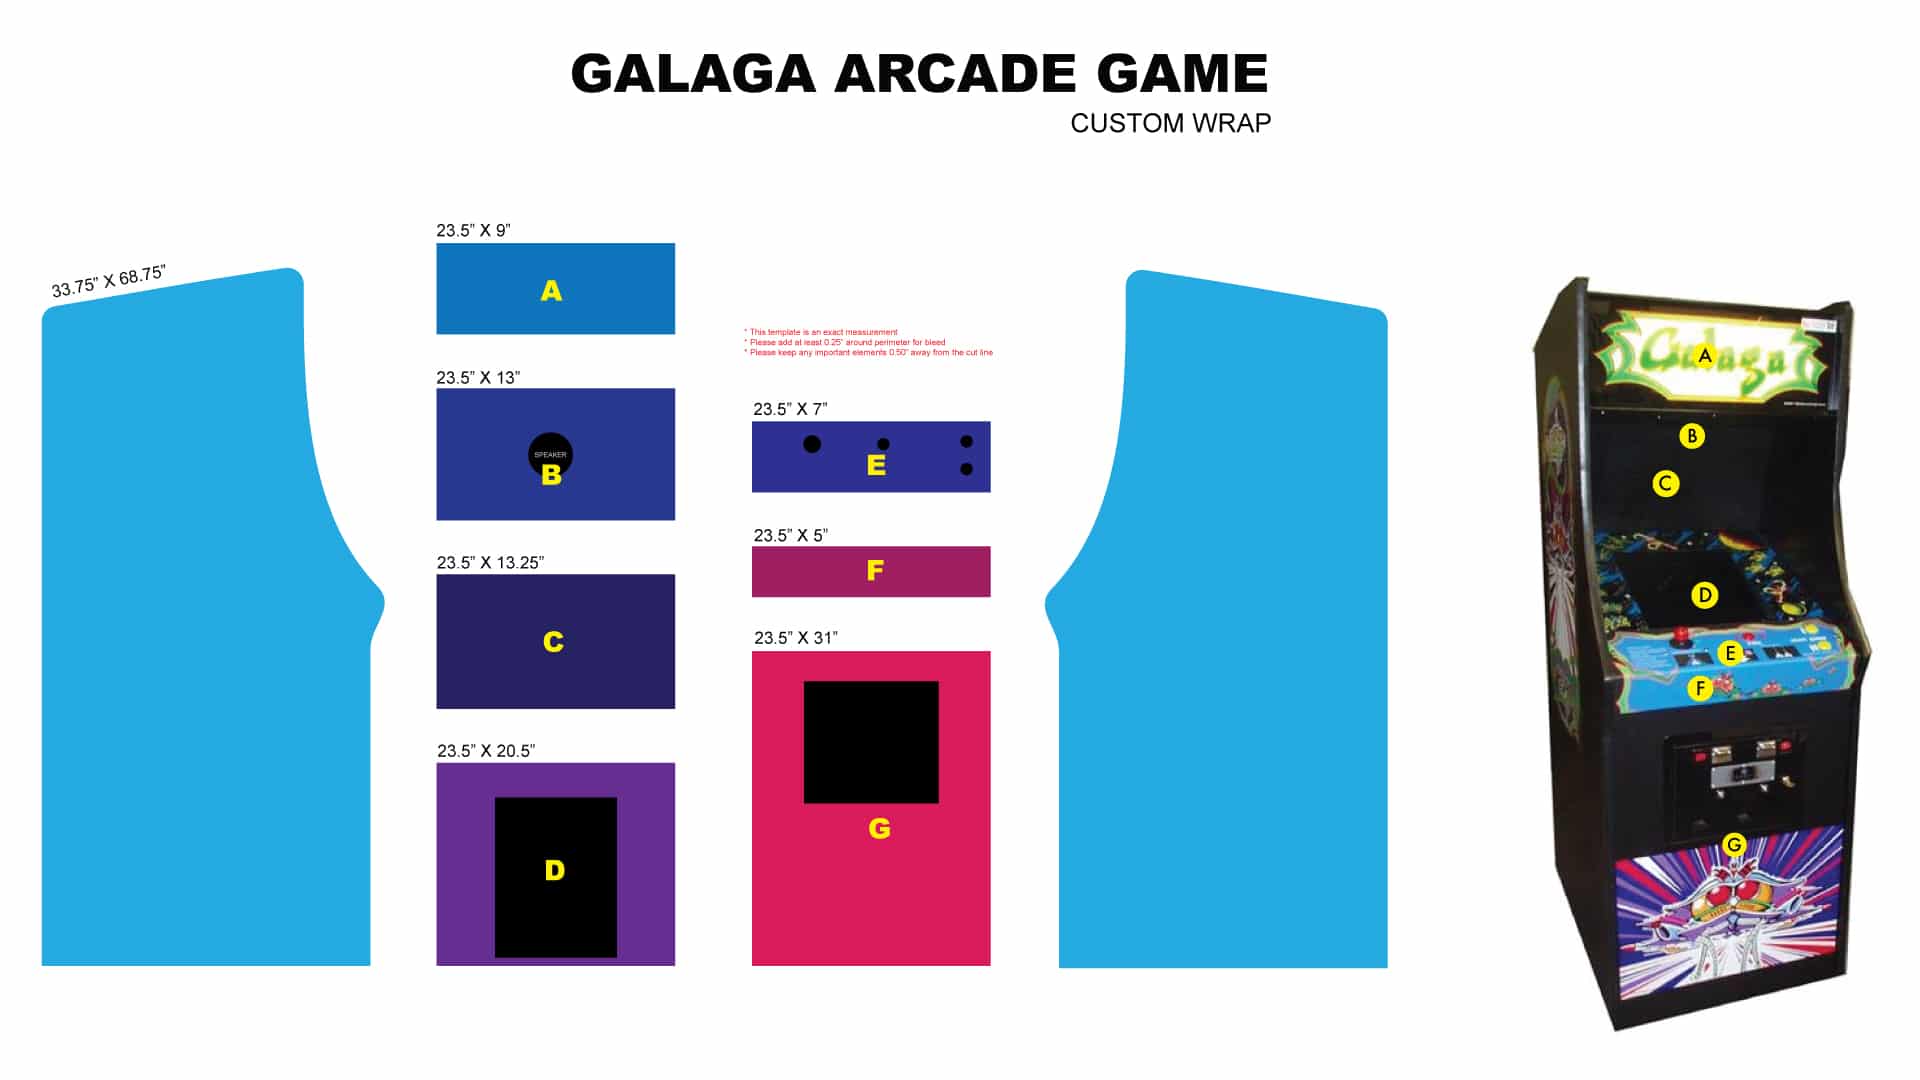 Galaga Arcade Game Abbey Road